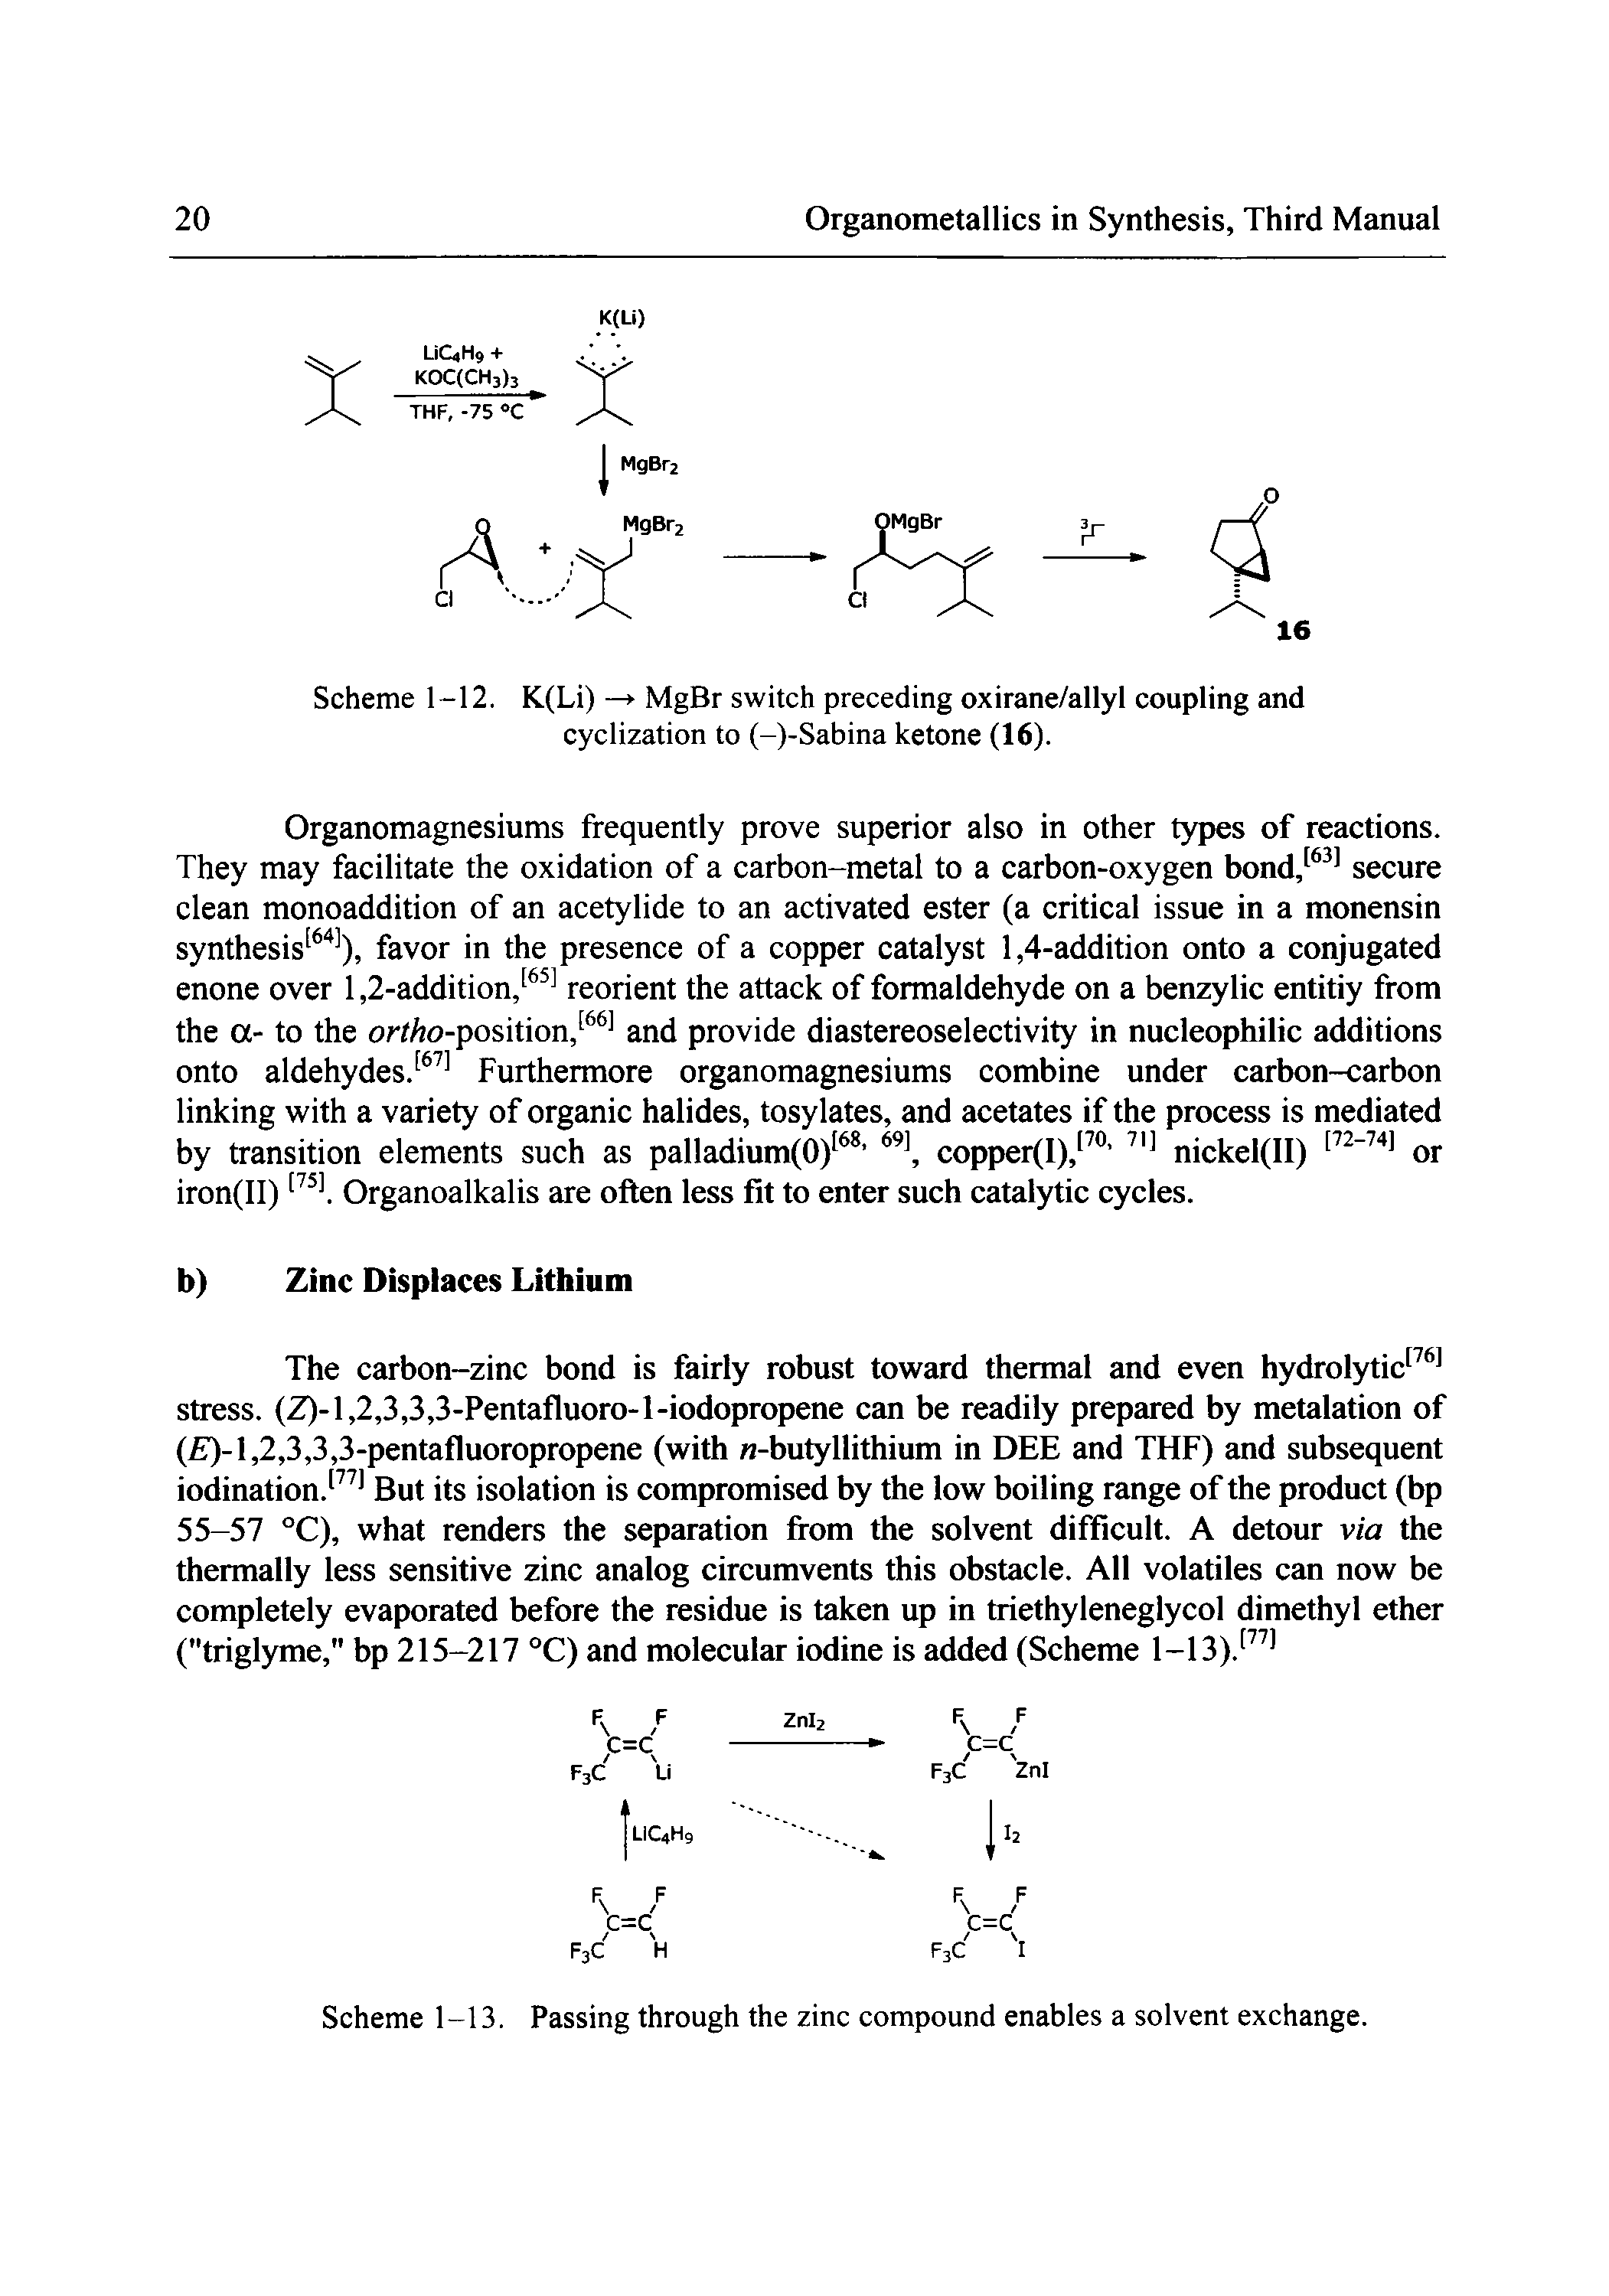 Scheme 1-12. K(Li) —> MgBr switch preceding oxirane/allyl coupling and cyclization to (-)-Sabina ketone (16).